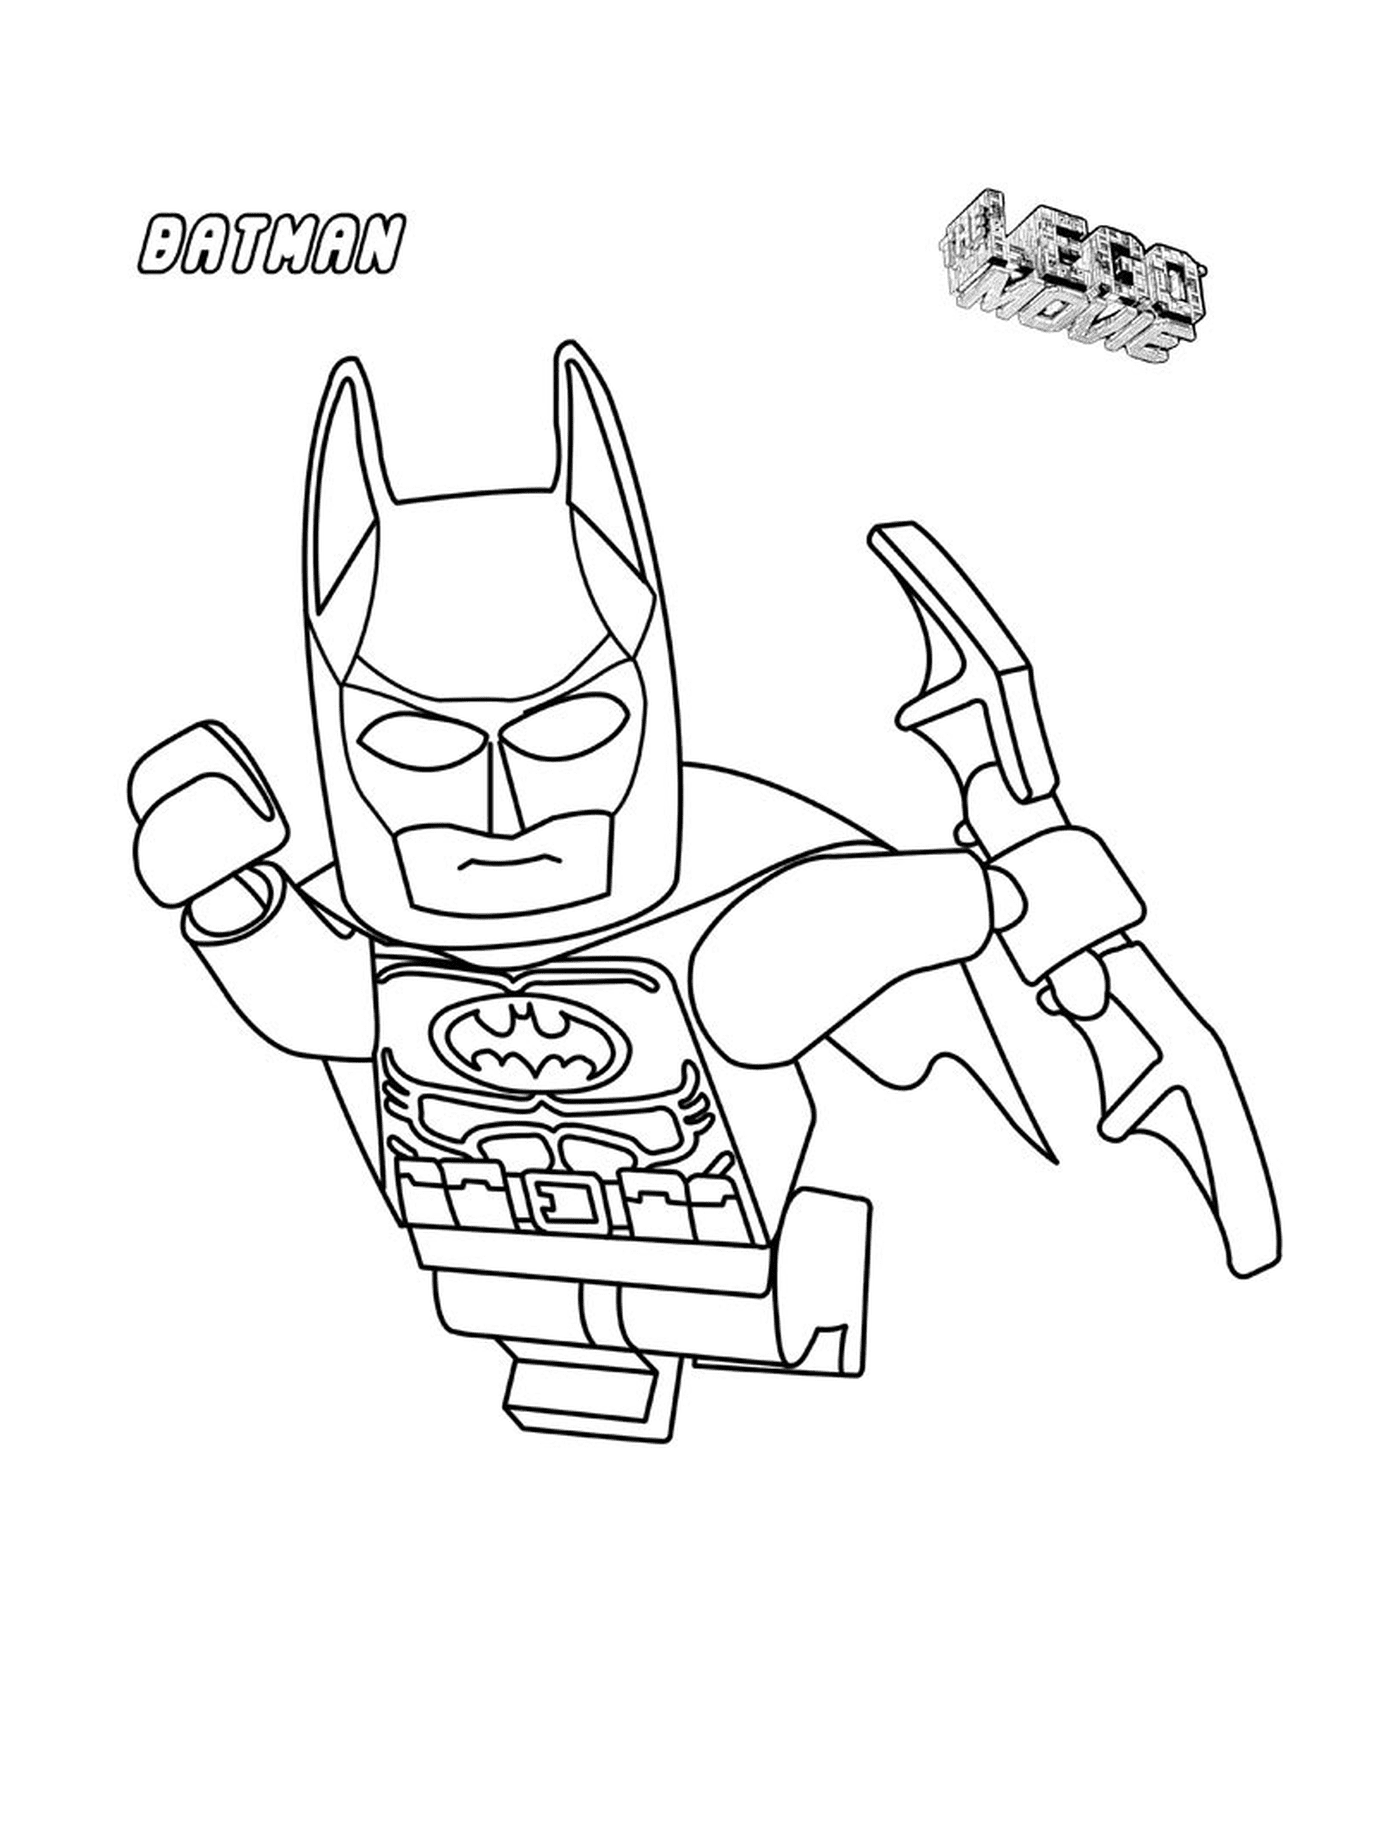  Batman Lego in the air 